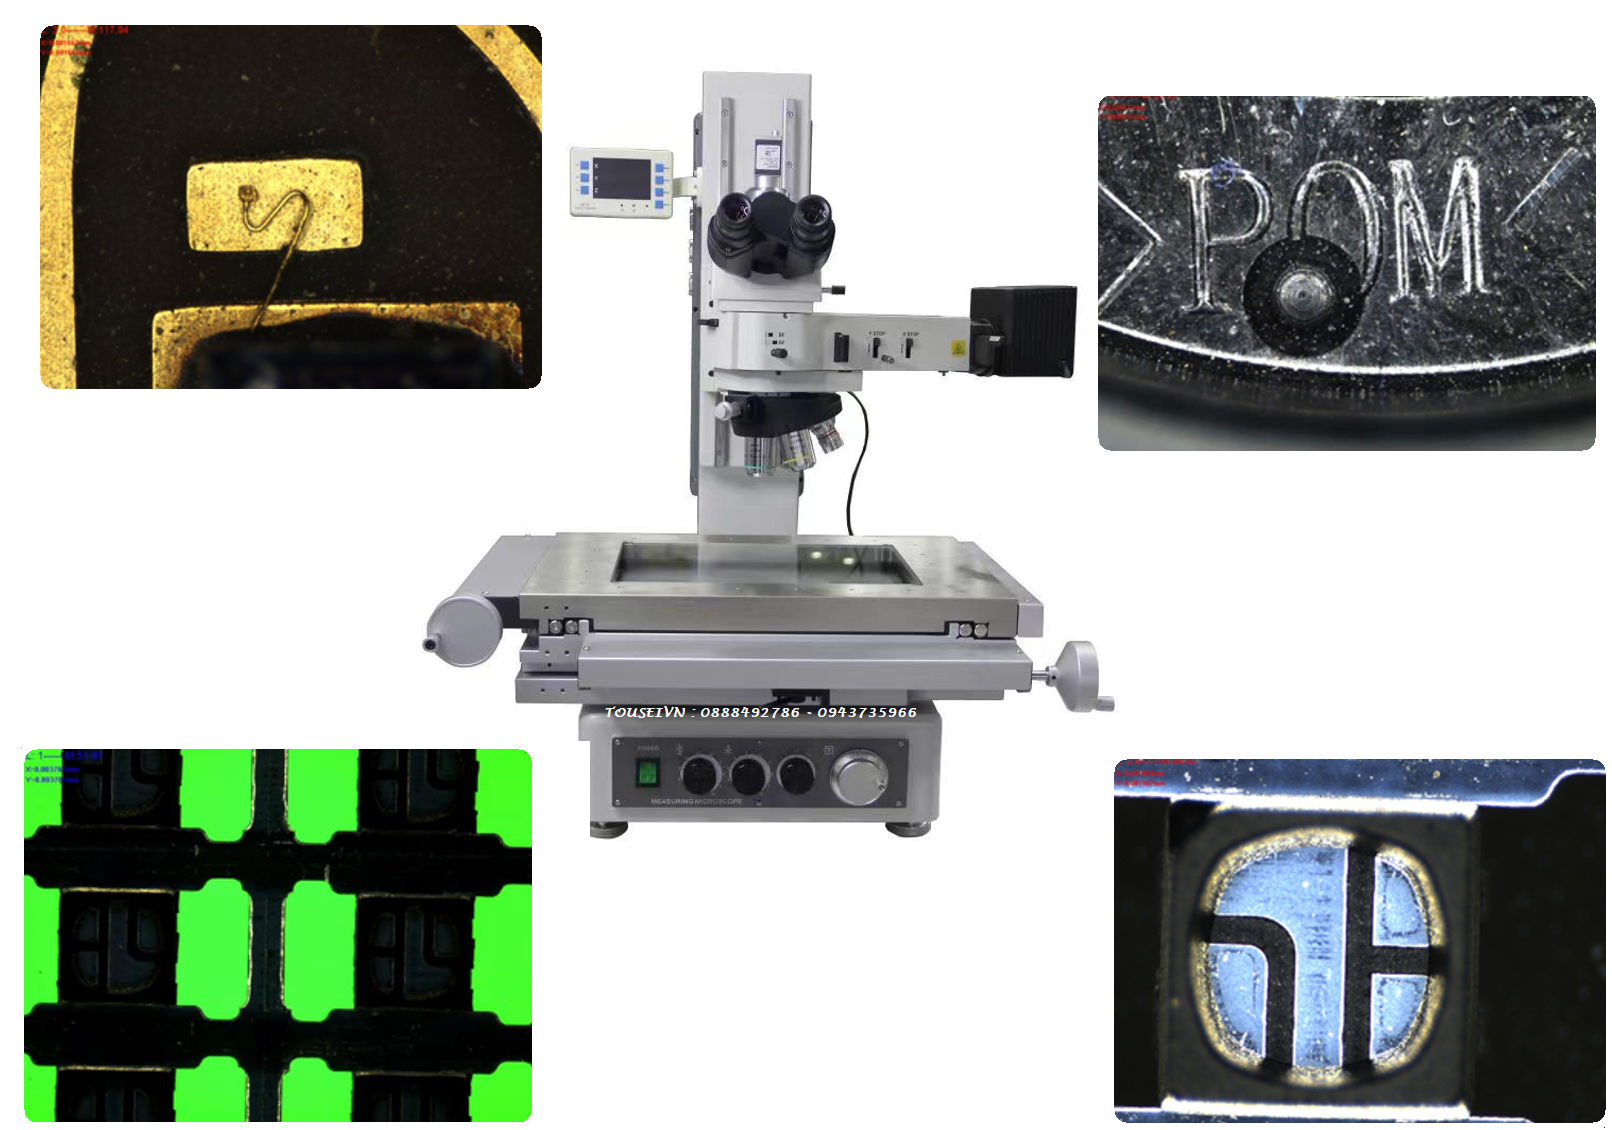 Kết quả hiển thị hình ảnh 2 chiều của máy đo Máy đo 2D kính hiển vi Metallographic tools-makes microscope MM-300U Sobekk